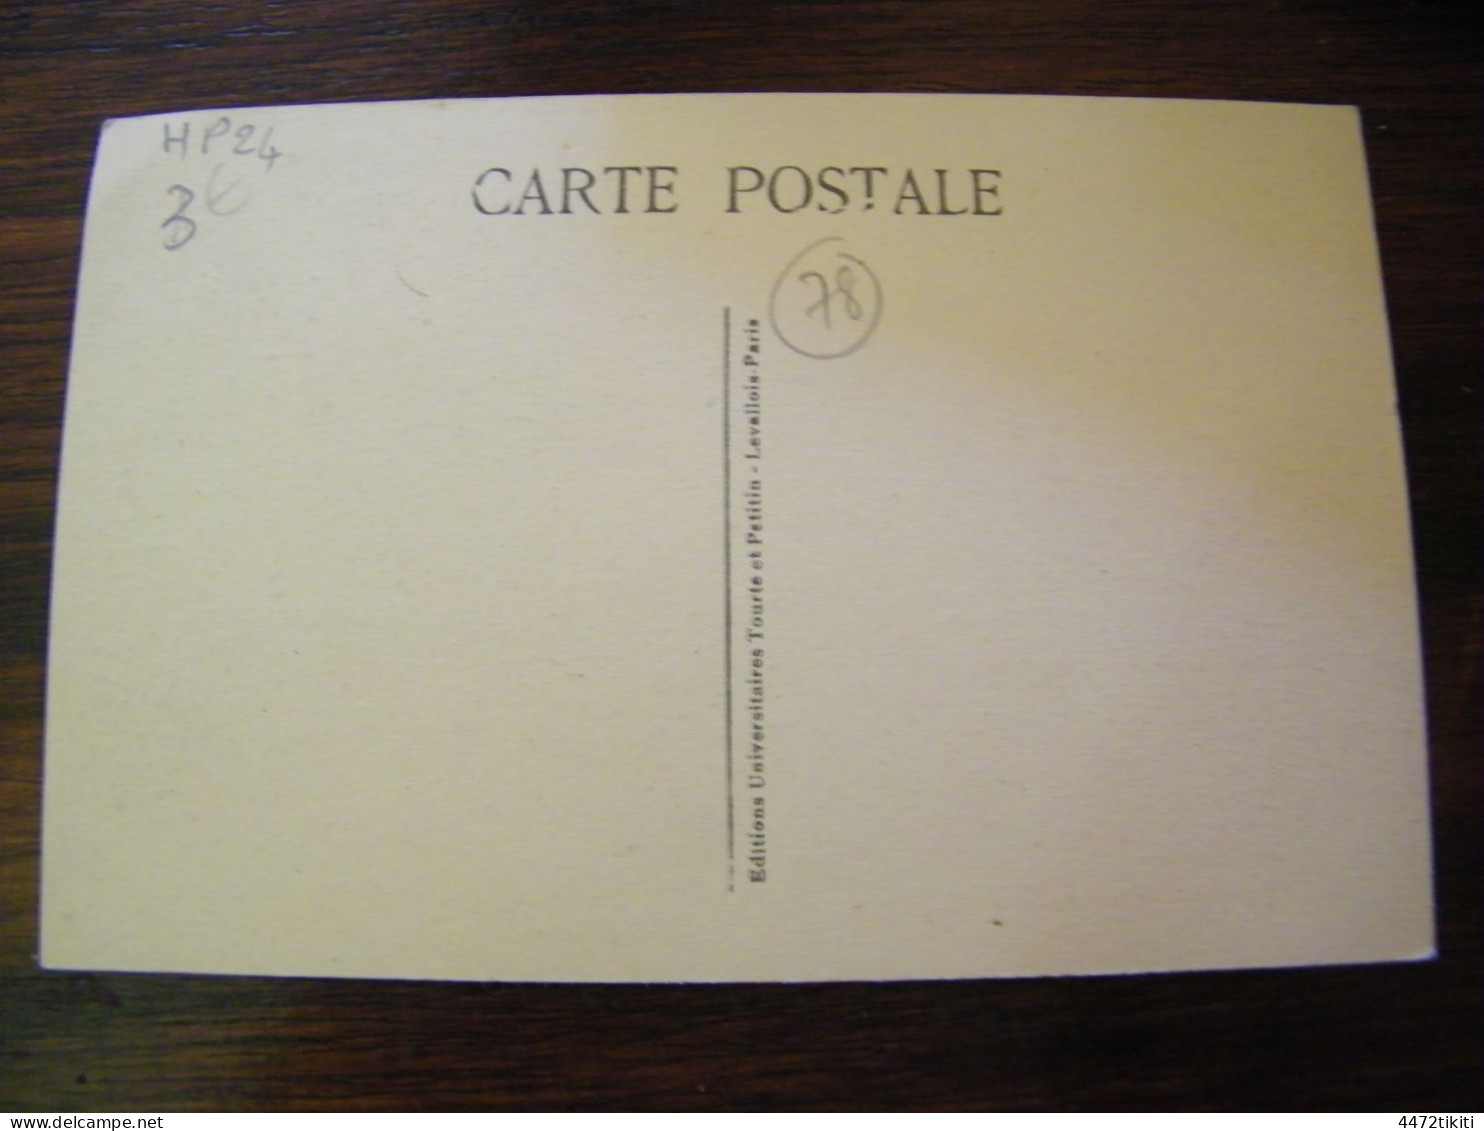 CPA - Survilliers (95) - Institution N.D. Notre Dame De Montmélian - St Witz - Ecole Apostolique -1920 - SUP (HP 24) - Survilliers